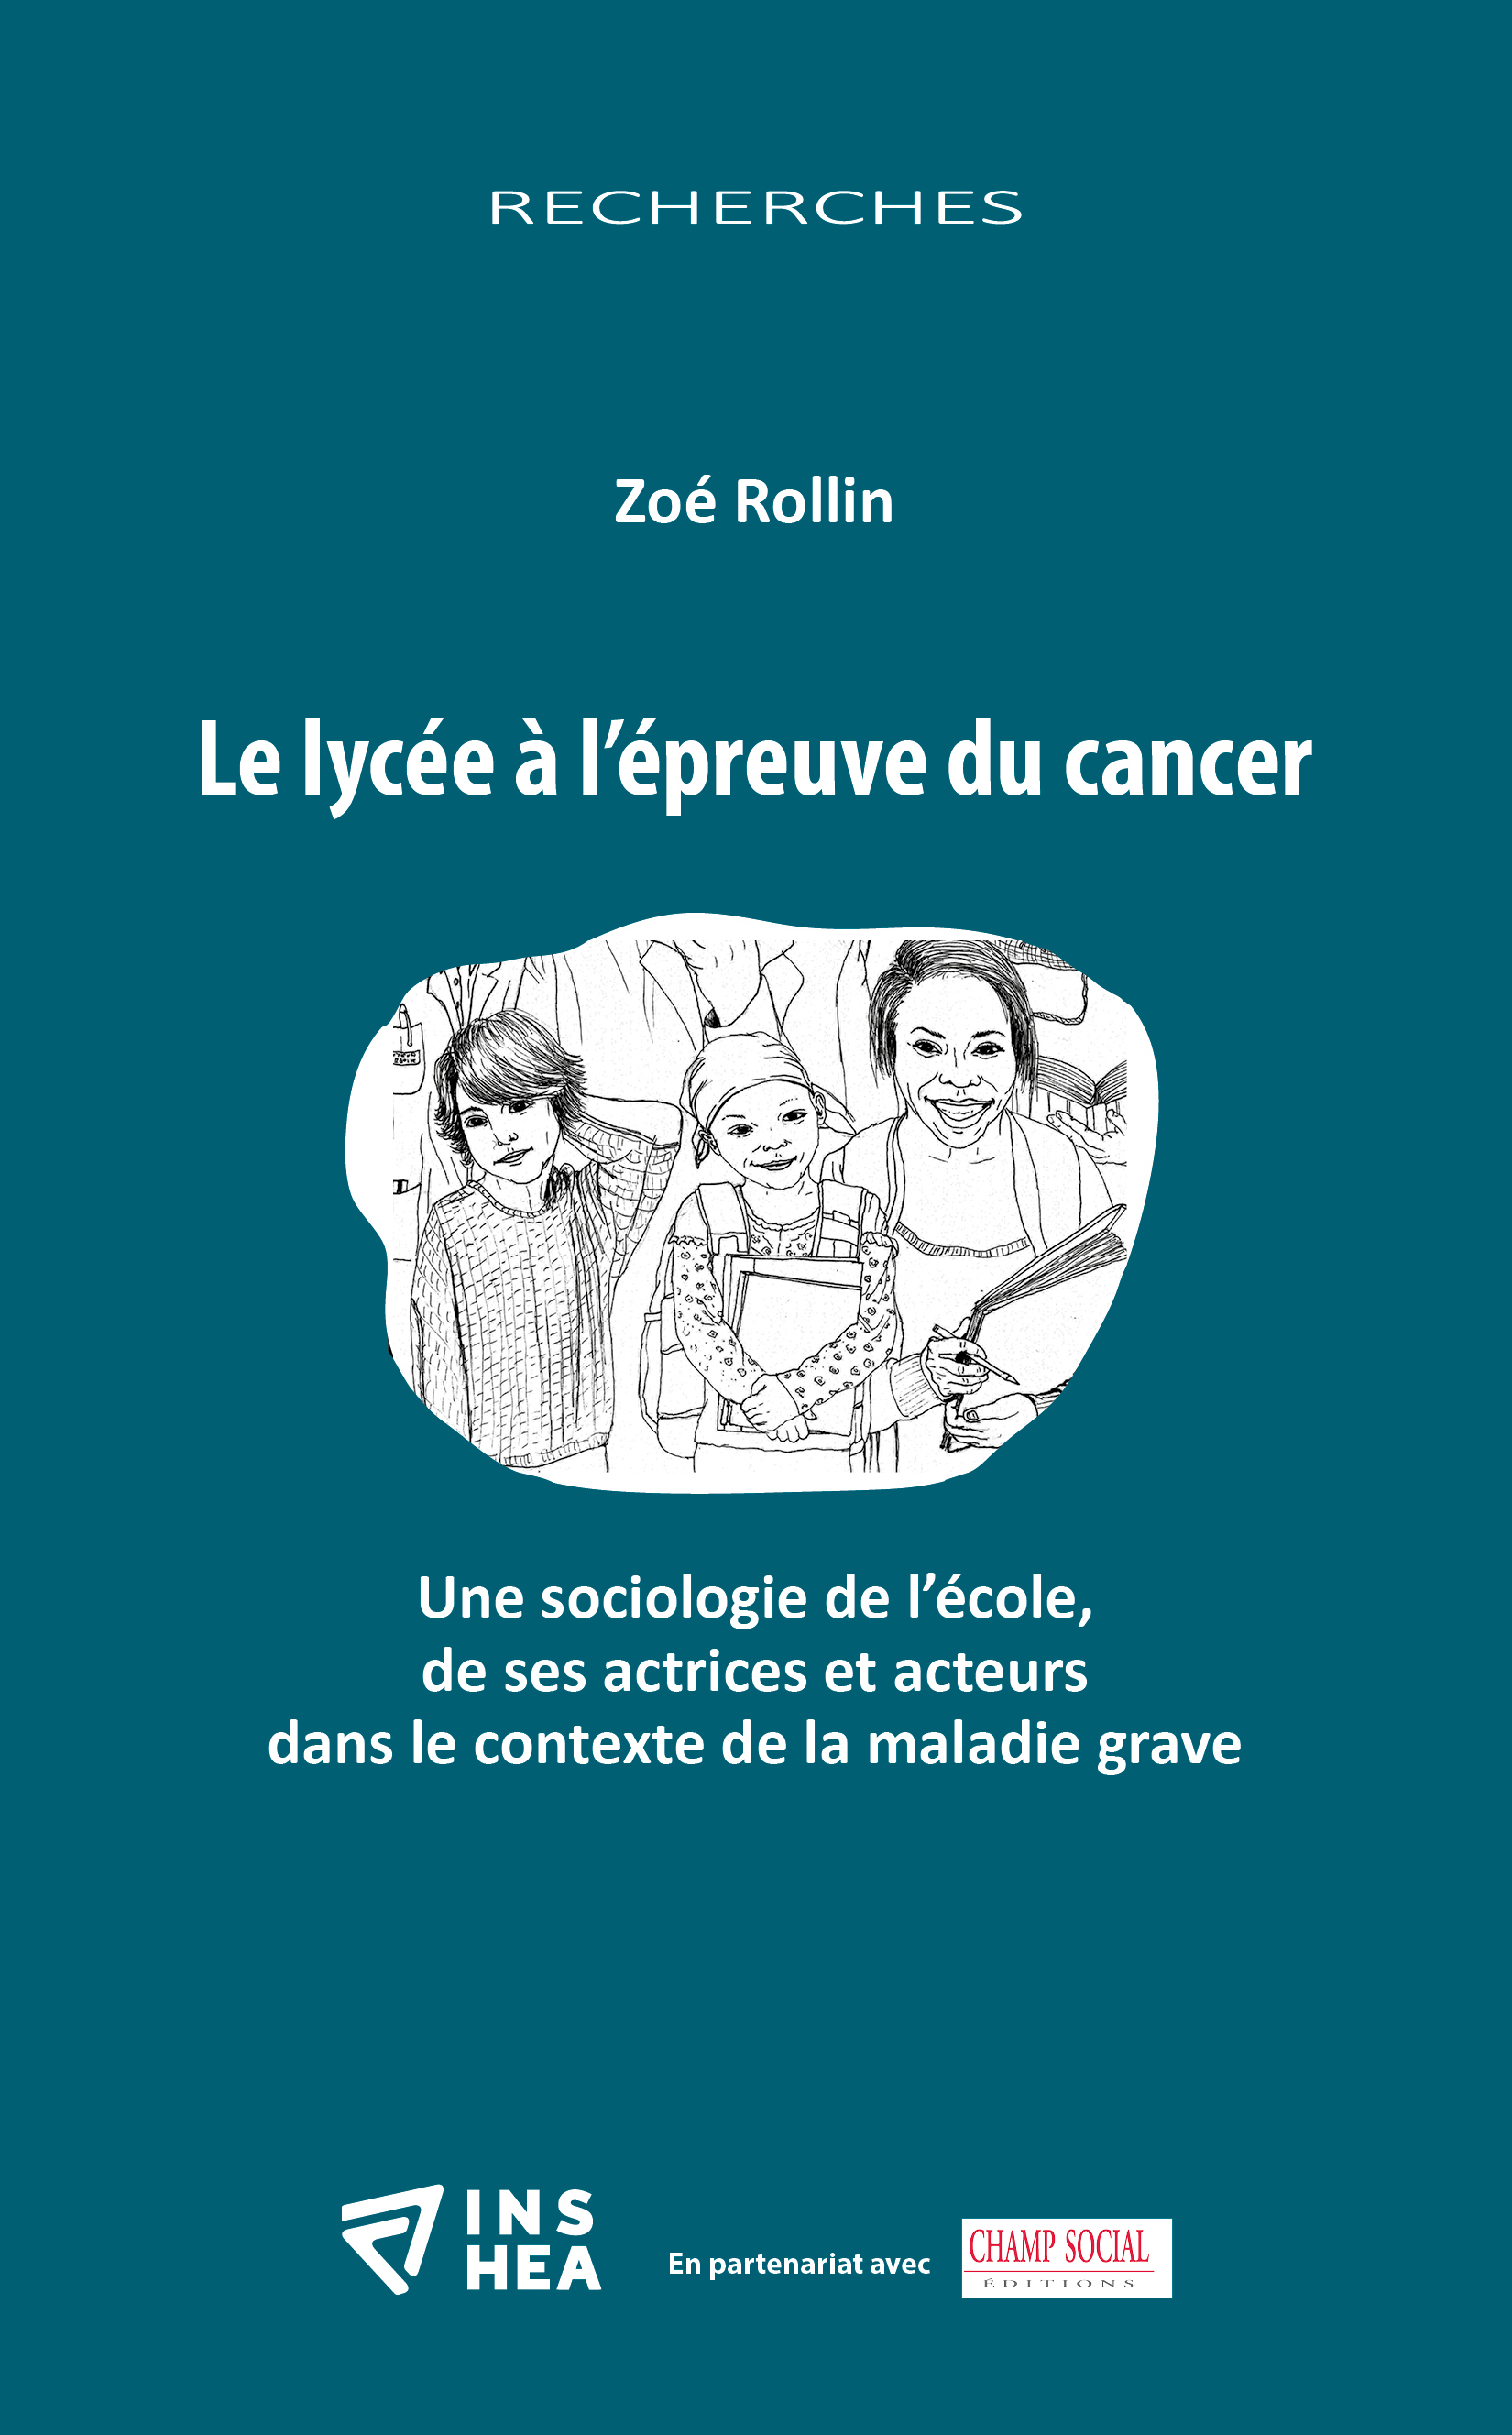 Couverture de l'ouvrage de Zoé Rollin : "Le lycée à l’épreuve du cancer"